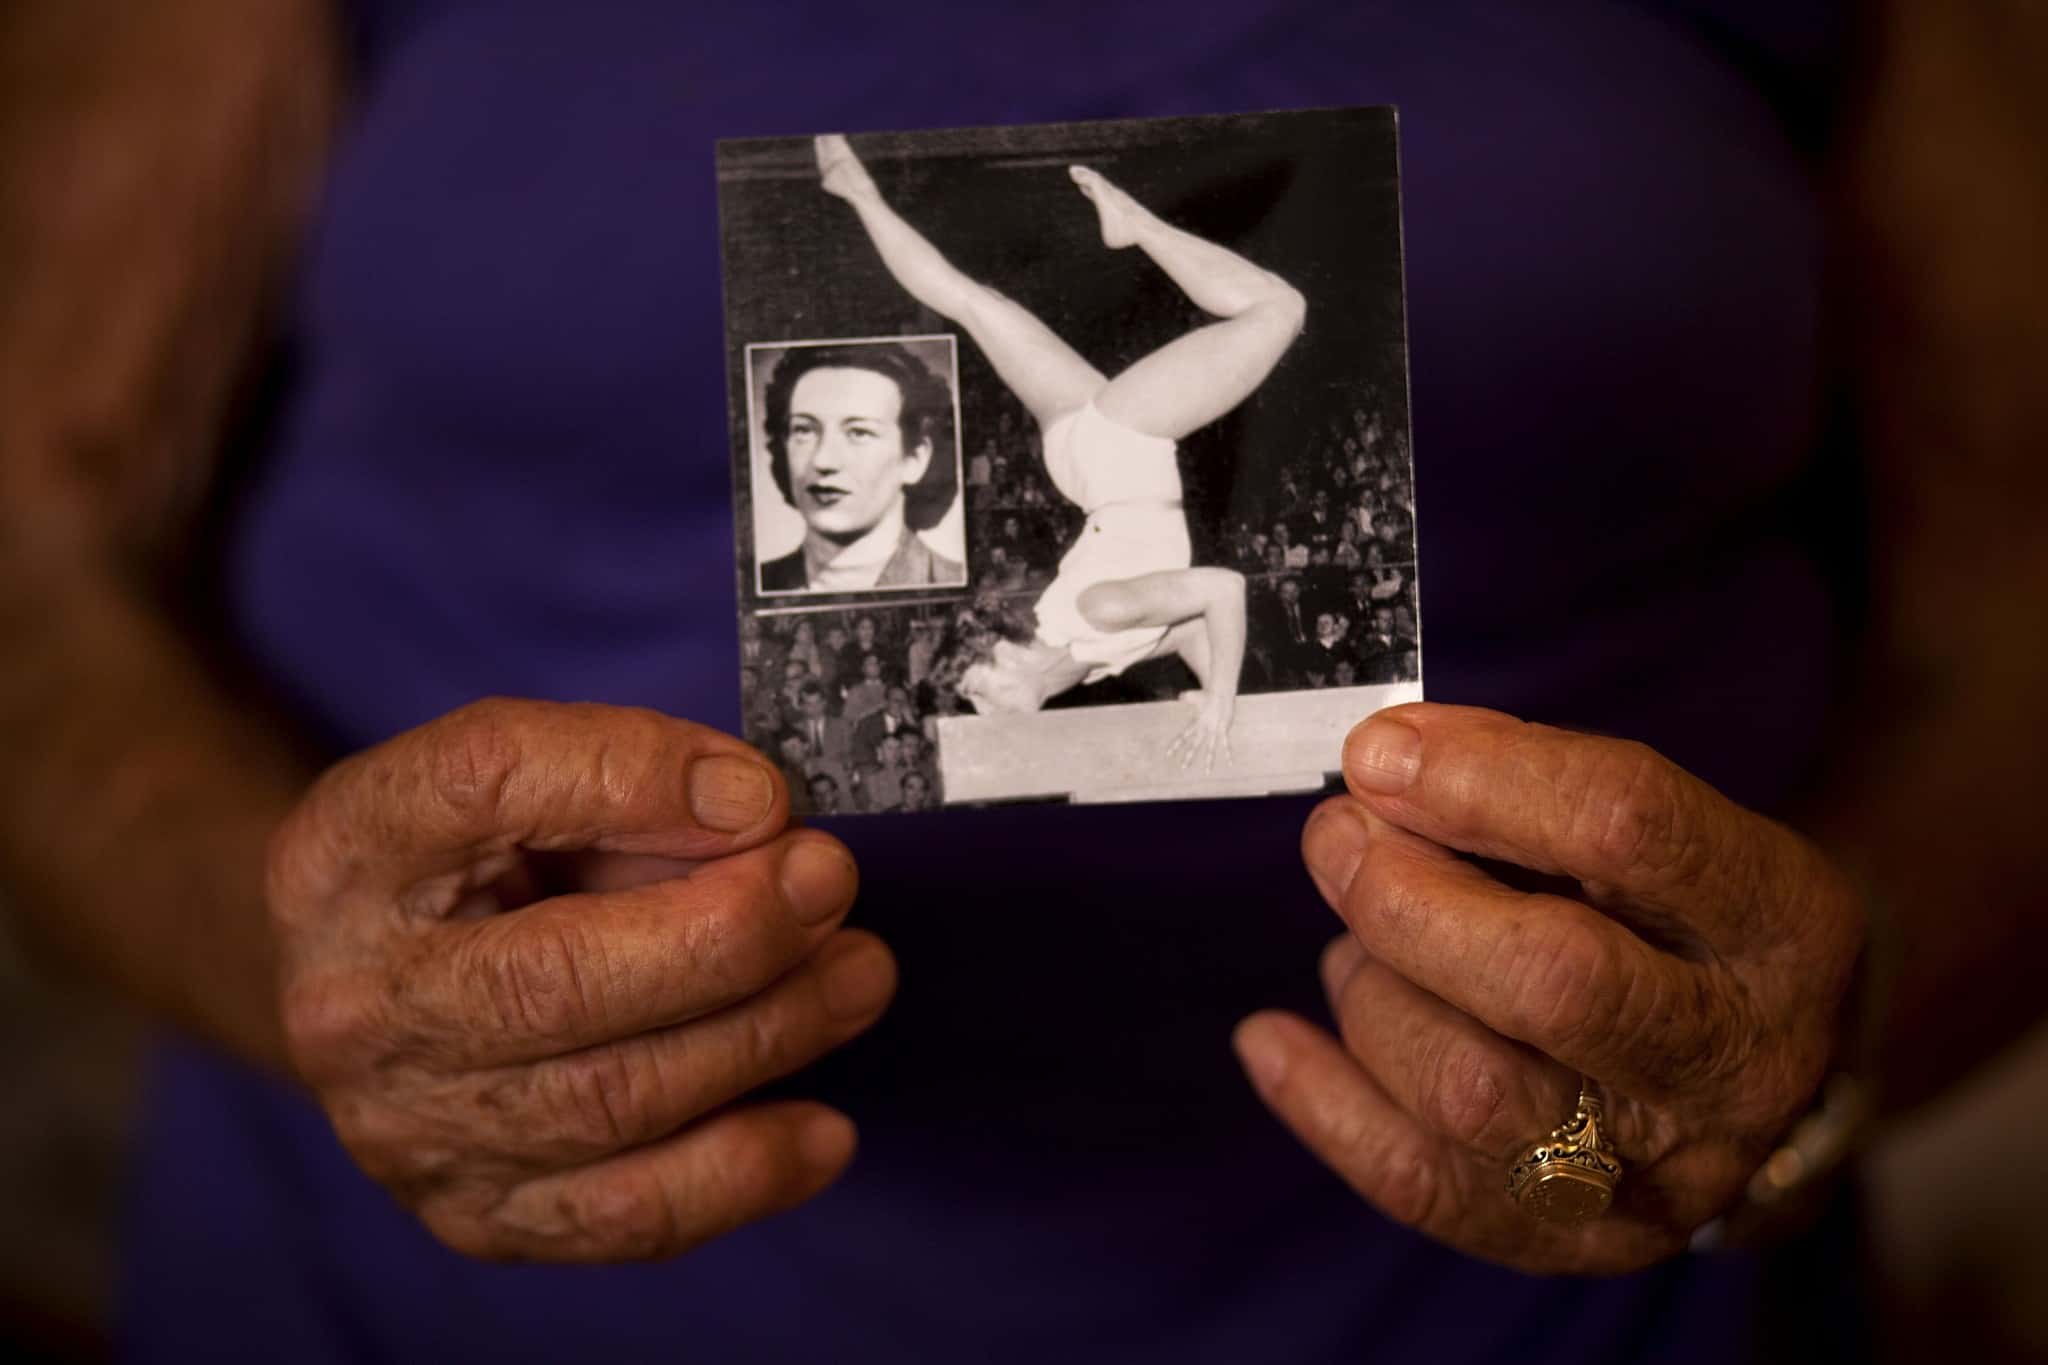 ידיה של אגנס קלטי אוחזות תמונה שלה כמתעמלת צעירה (צילום: AP Photo/Oded Balilty)